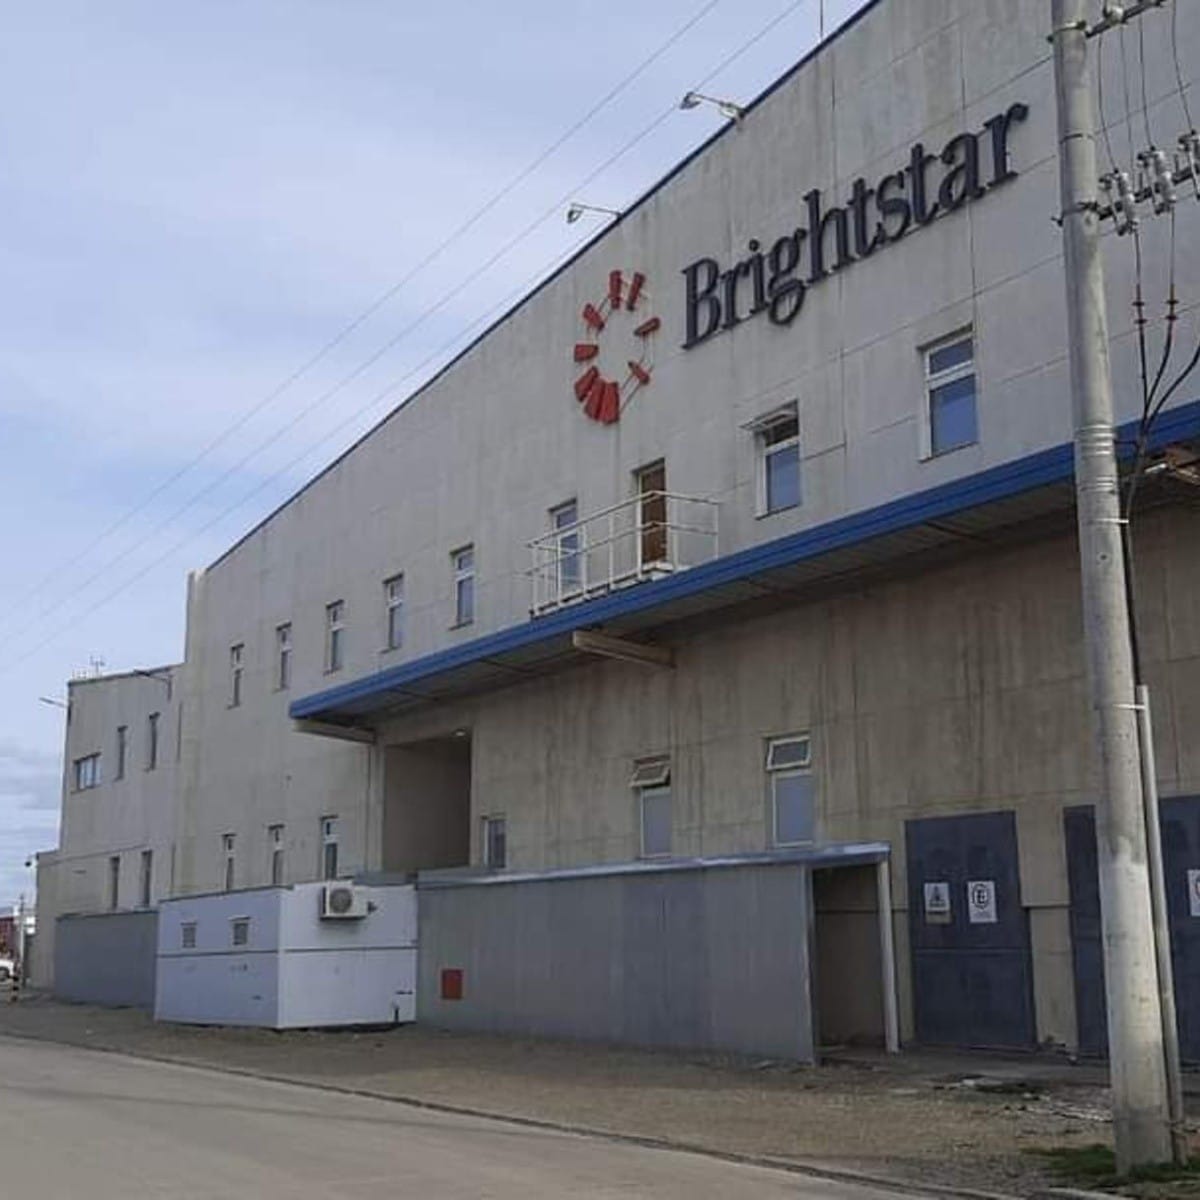 Brighstar : 19 empleados de Floor Clean despedidos